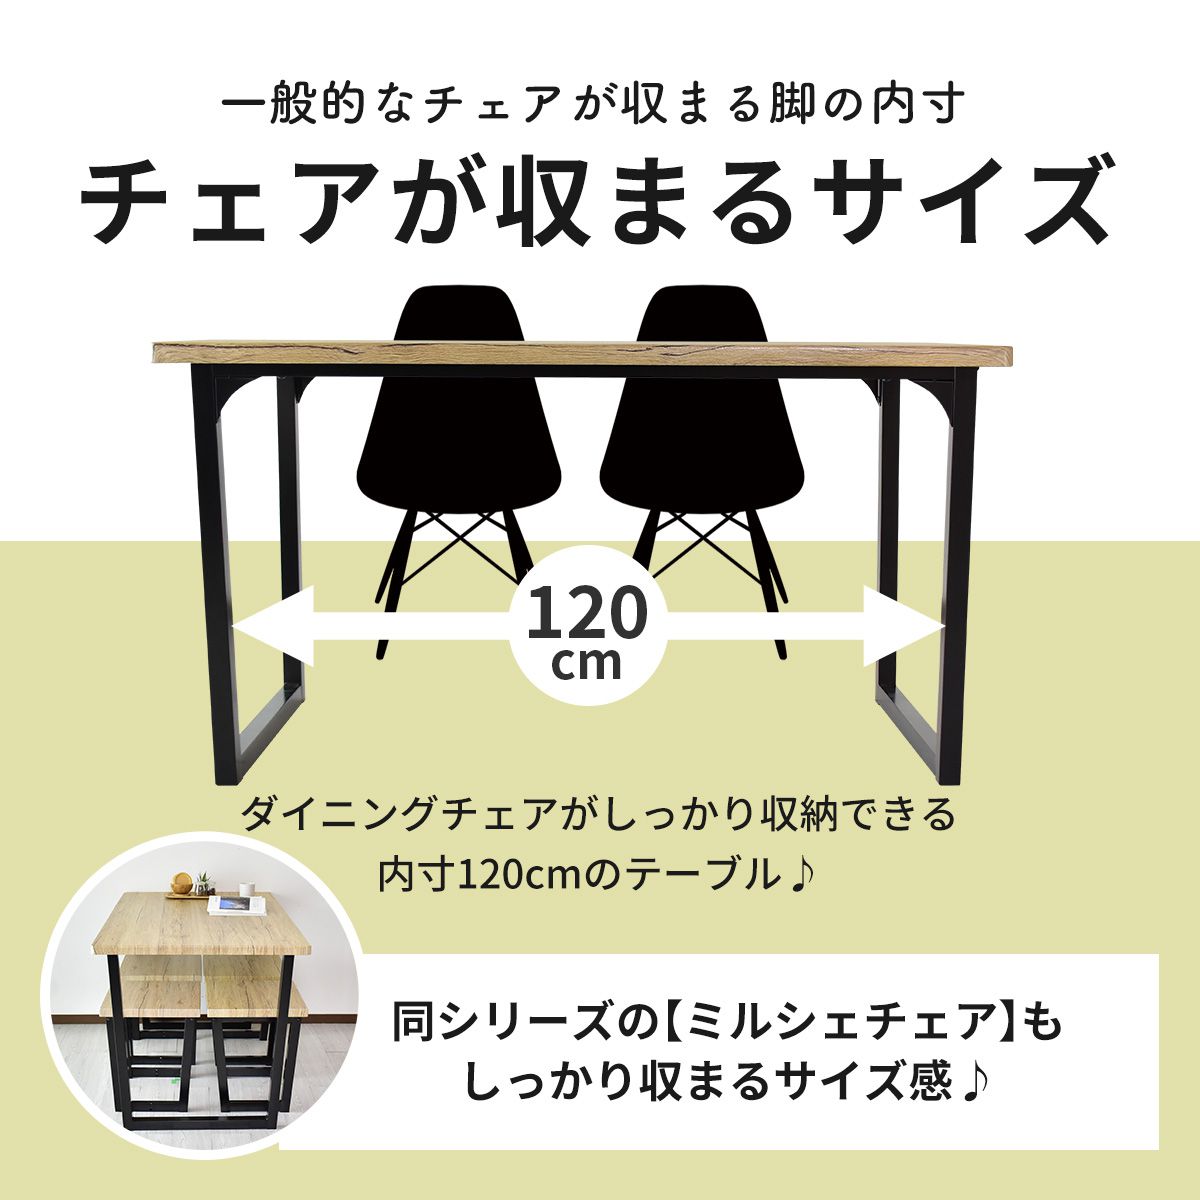 【幅140】 ダイニングテーブル キッチンテーブル カフェ風ダイニング ミルシェ テーブル